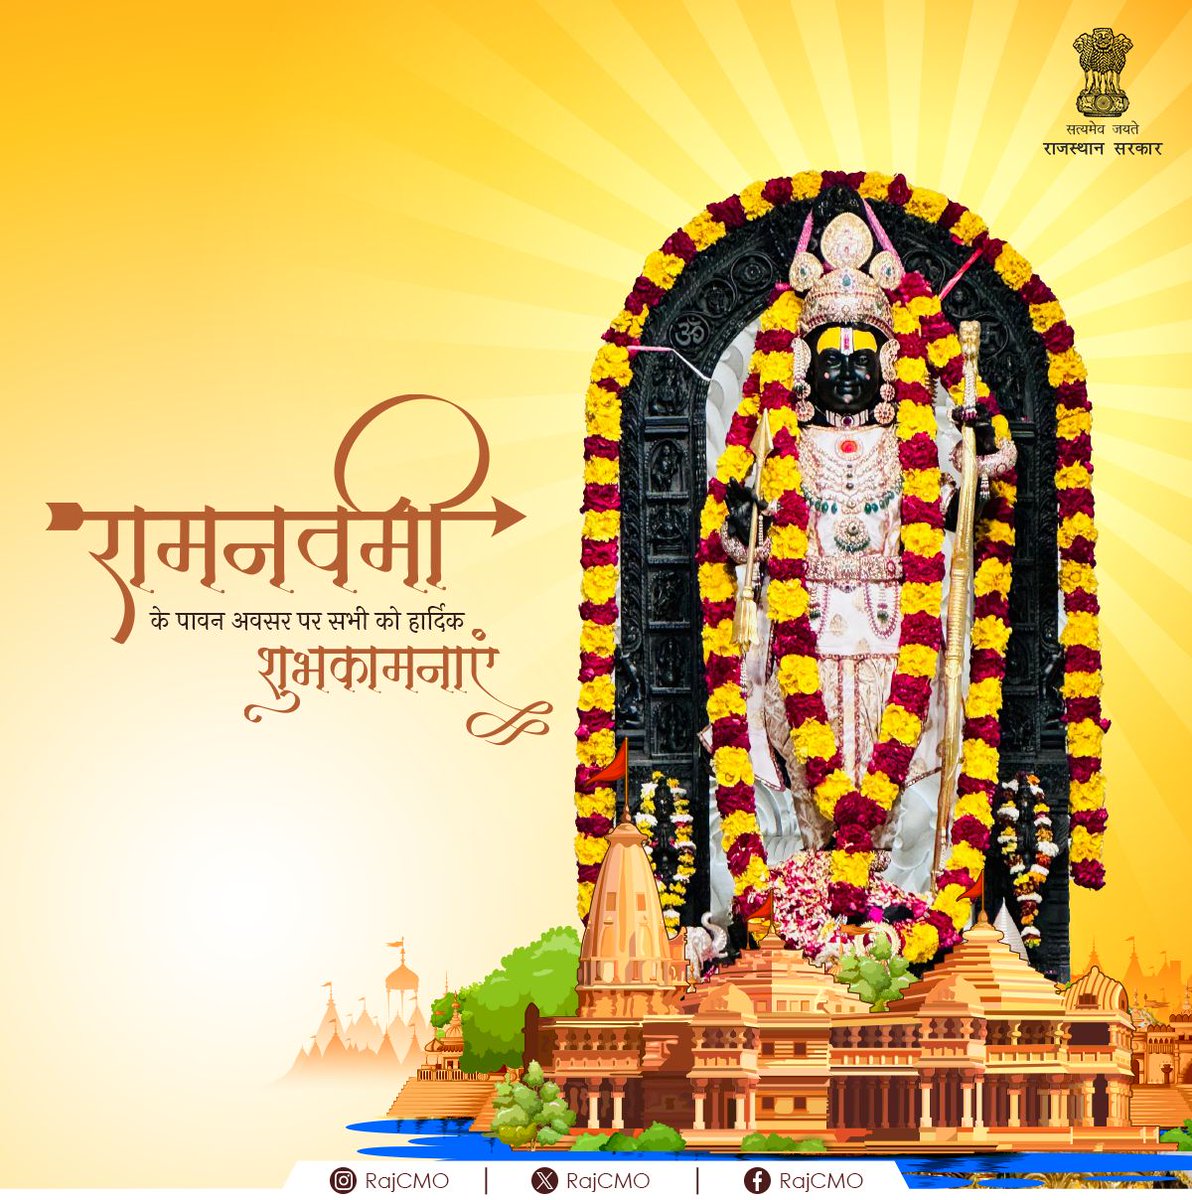 रामनवमी के पावन अवसर पर सभी को हार्दिक शुभकामनाएं। यह पर्व सभी के जीवन में सुख-समृद्धि और खुशहाली लेकर आए। #CMORajasthan #RajCMO #RamNavami